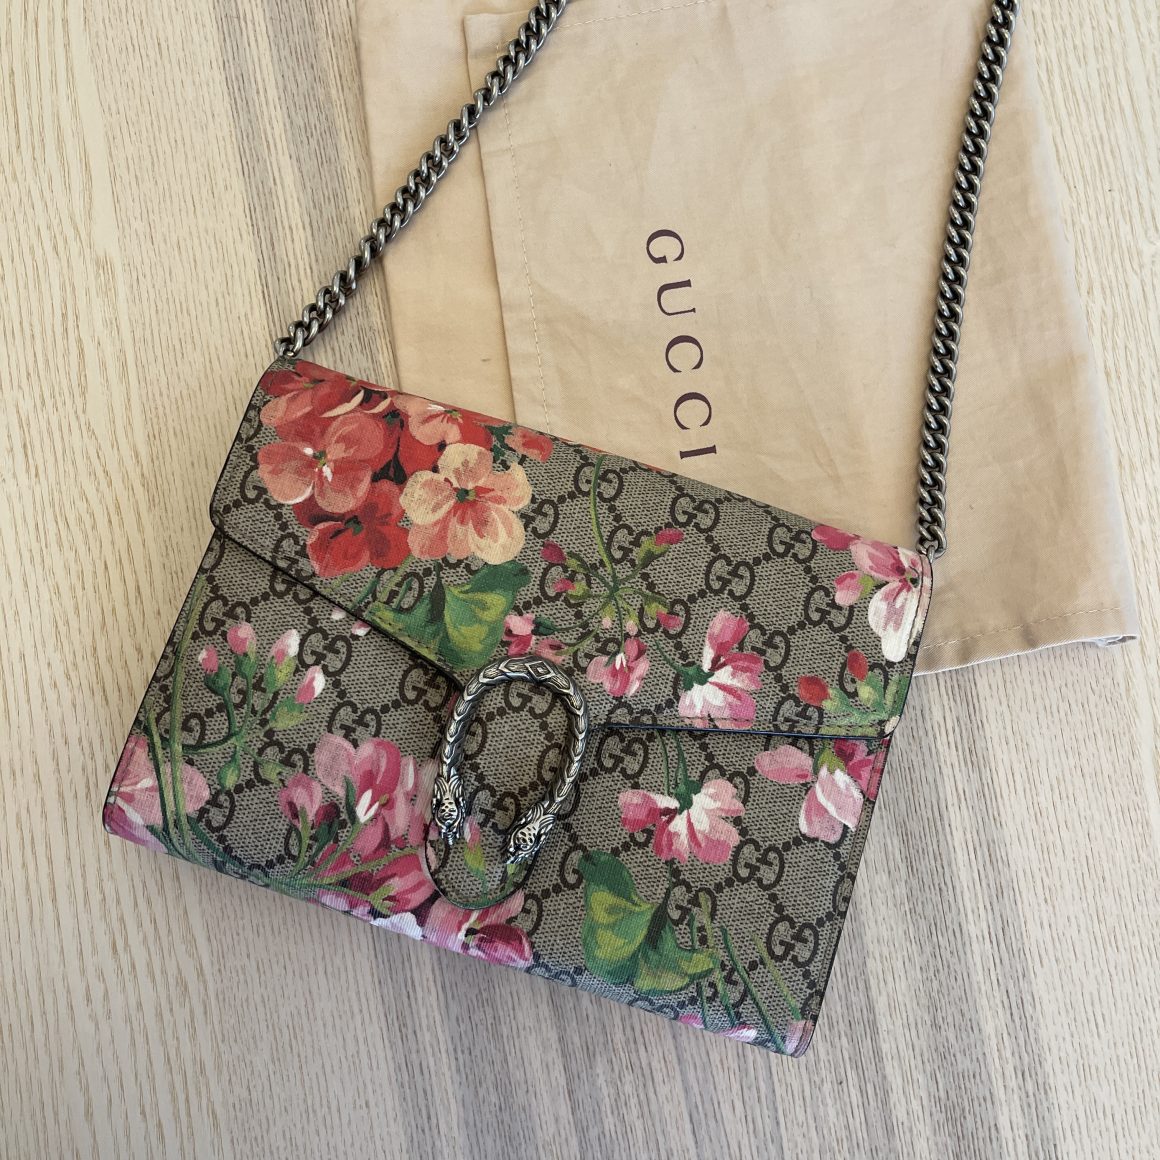 Gucci Blooms Mini Pochette with Chain